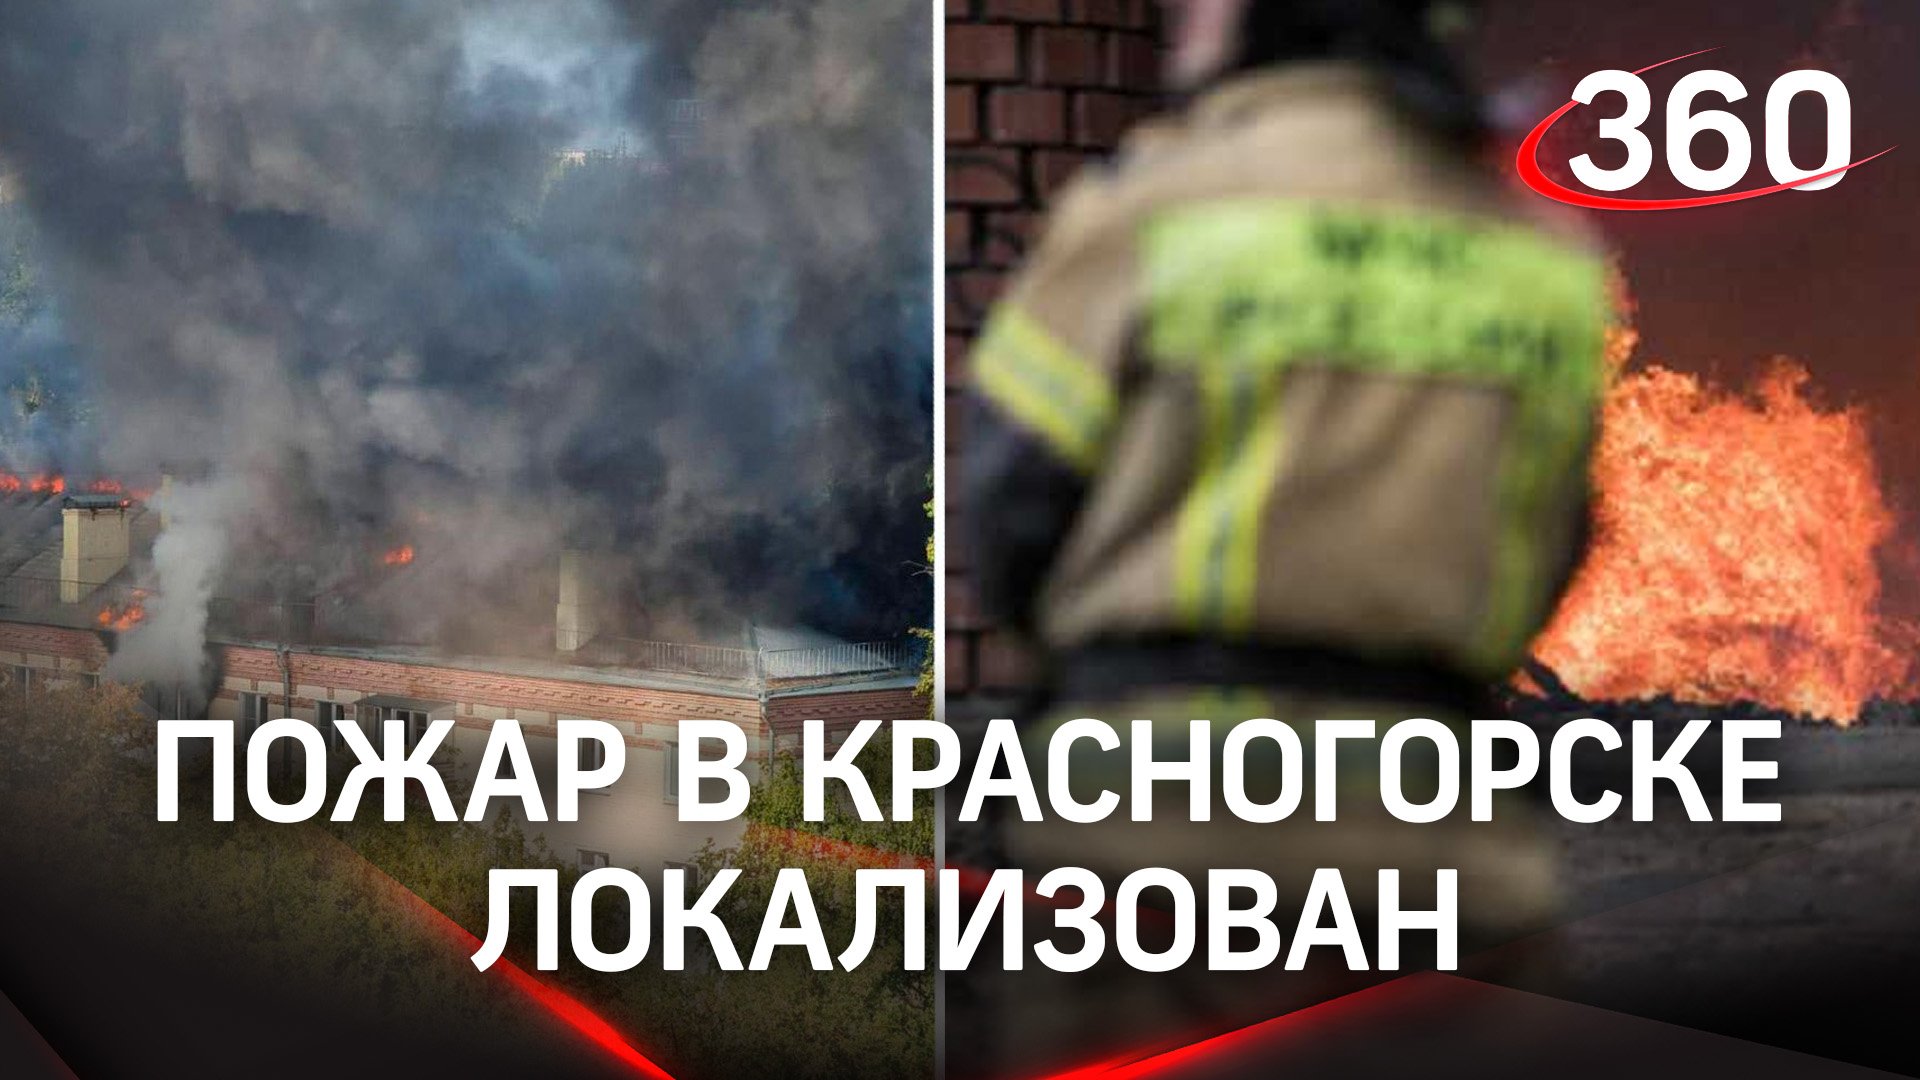 Огонь под контролем: спасатели локализовали пожар в четырехэтажке в Красногорске